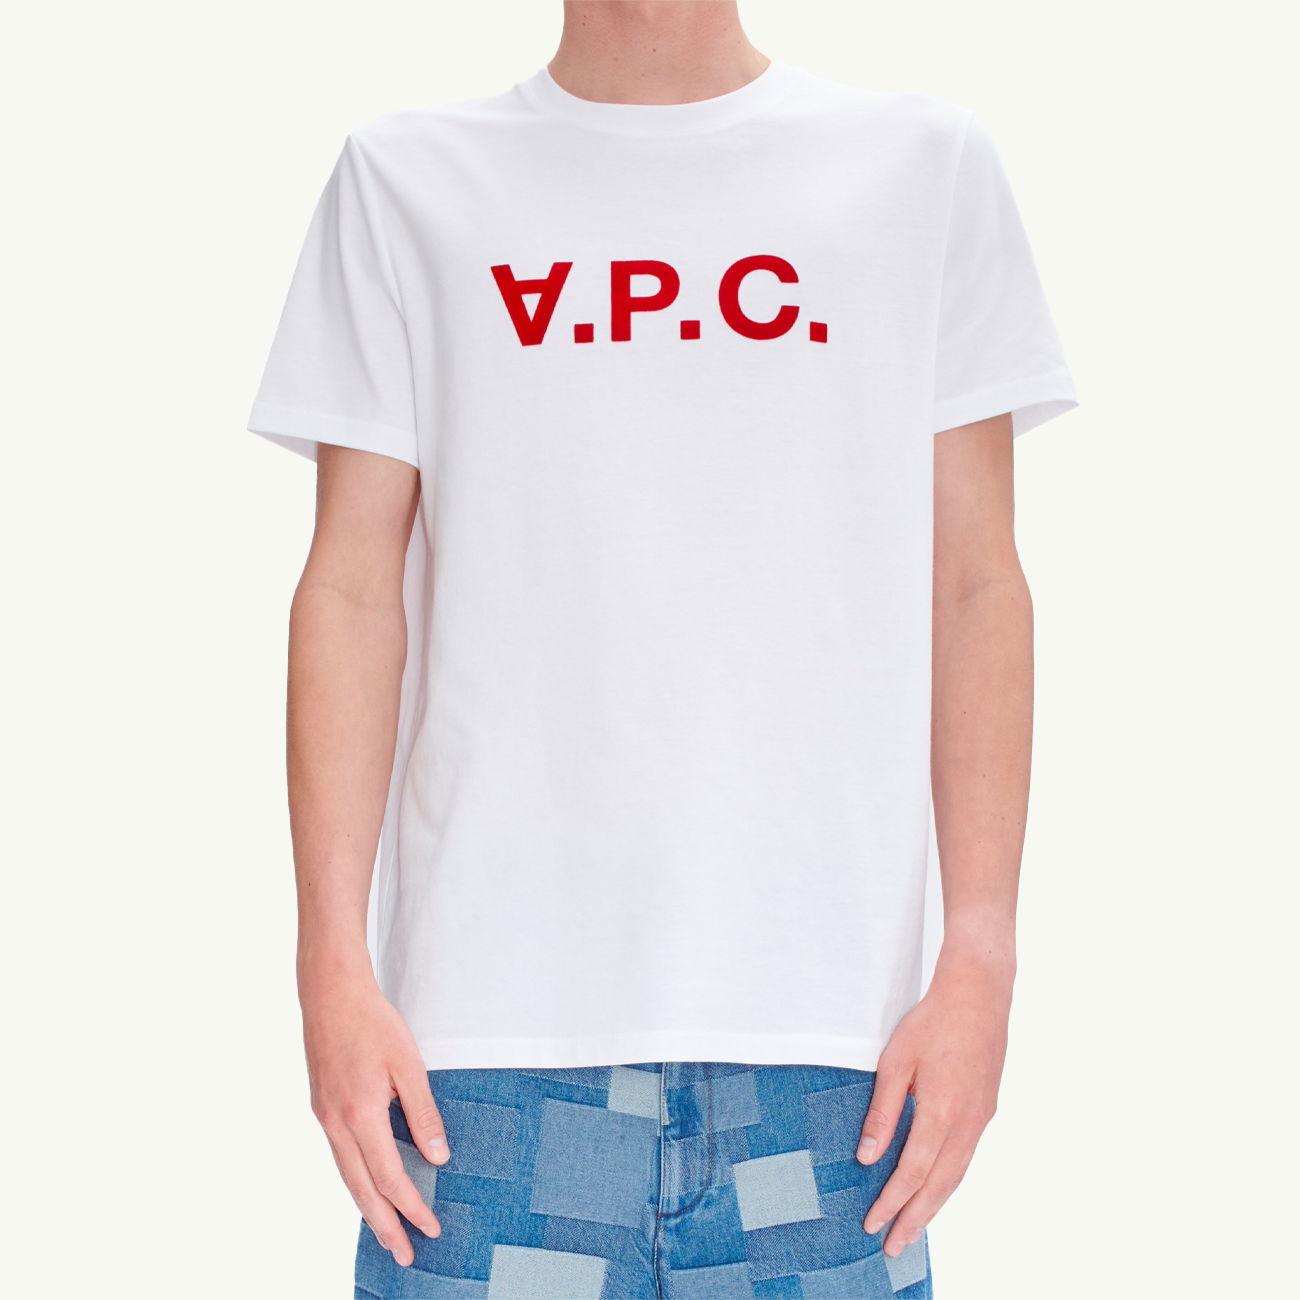 VPC T-Shirt - White/Red